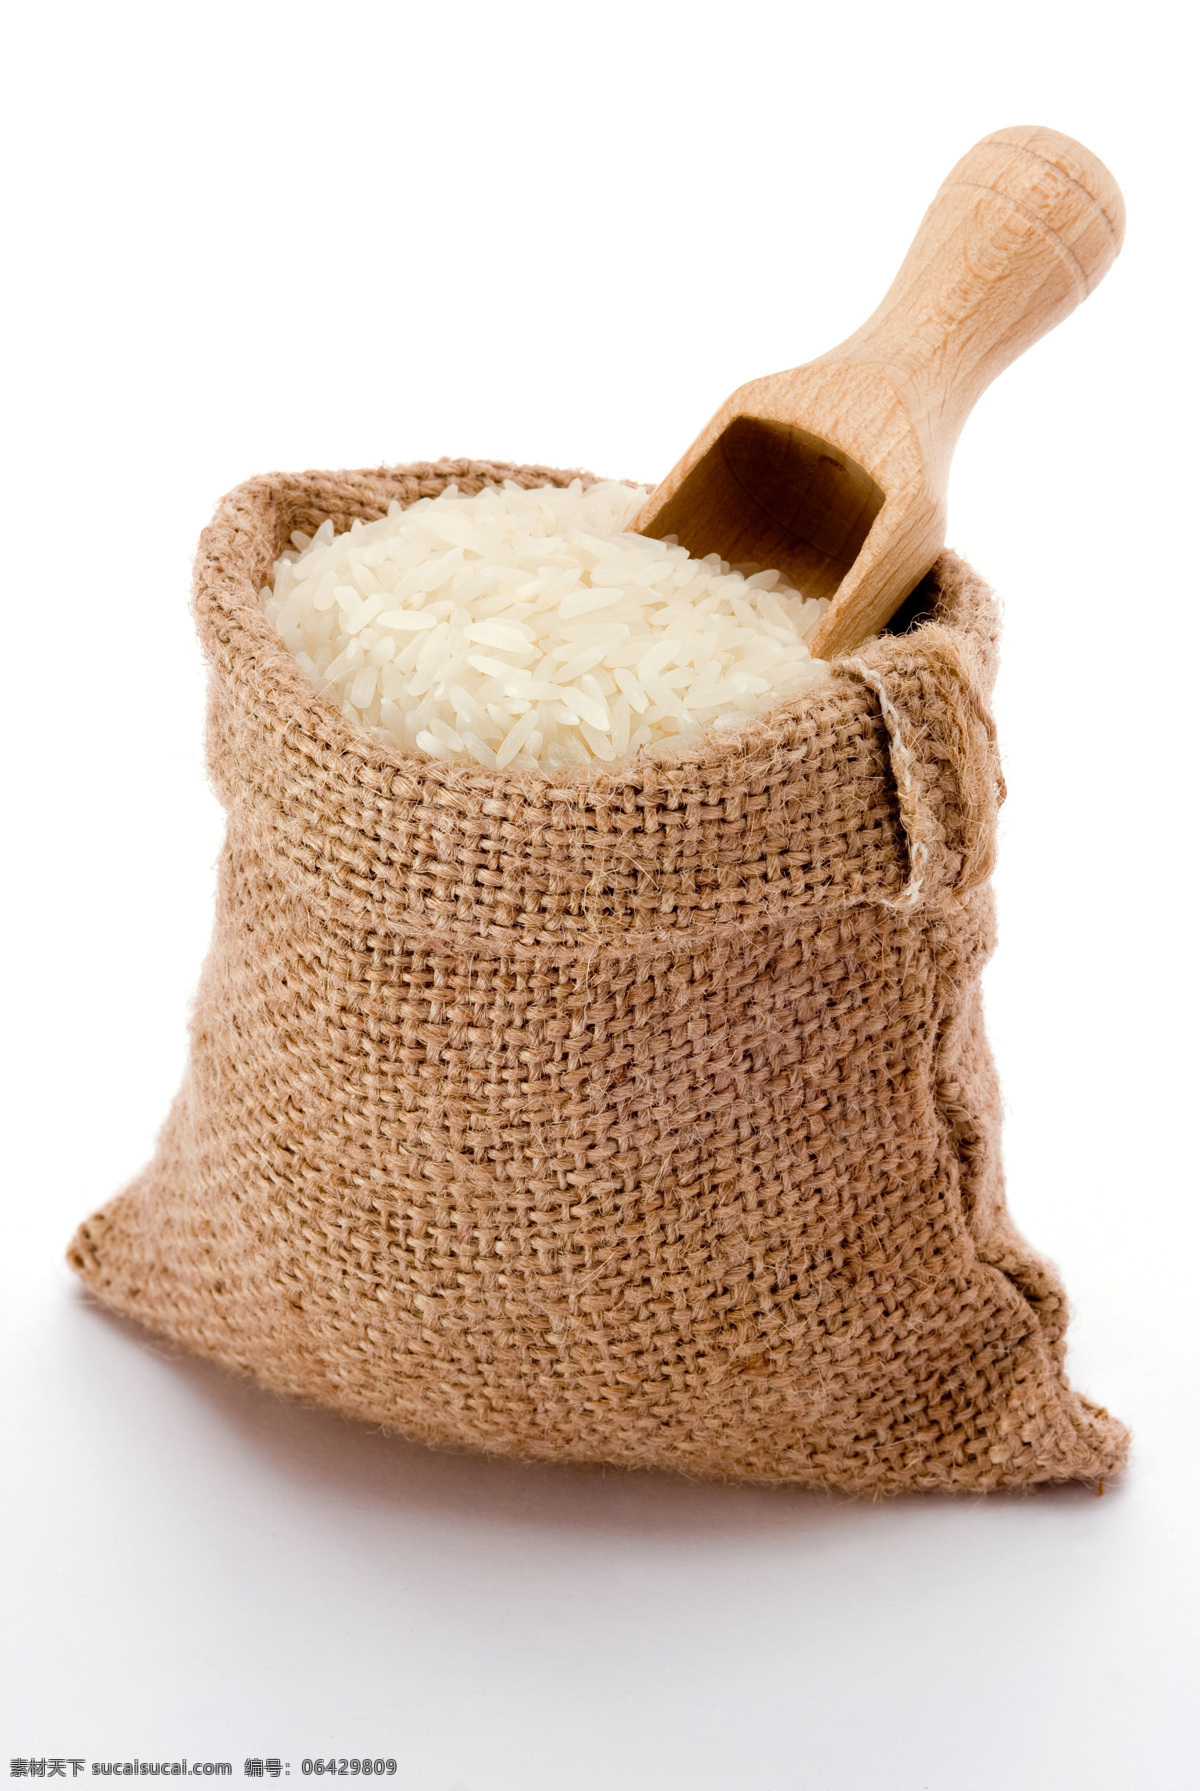 一袋大米 米 粮食 大米 水稻 农作物 收获 主食 食品 传统美食 餐饮美食